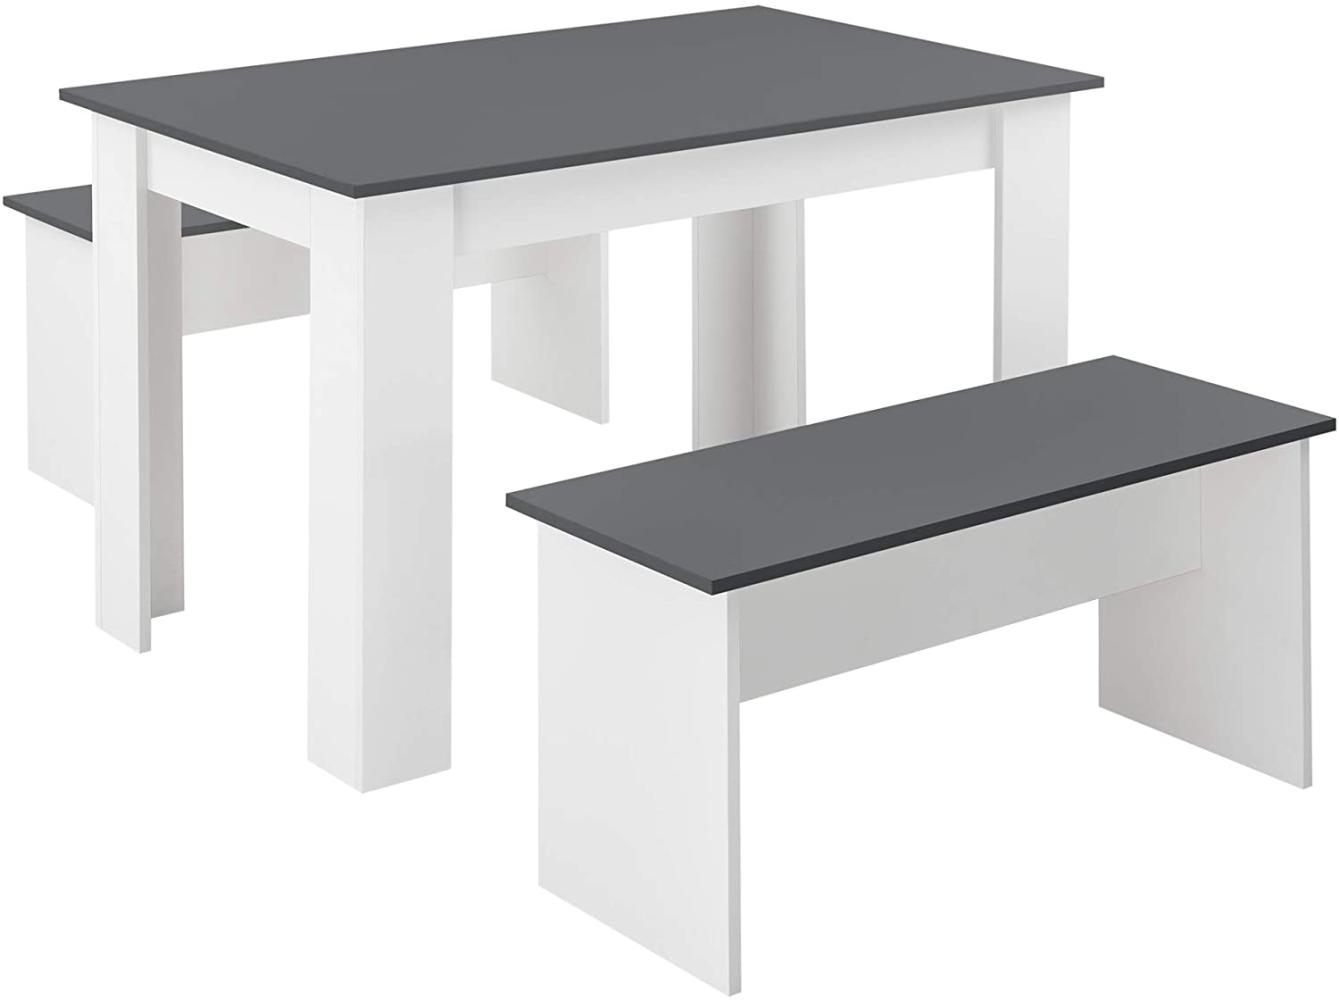 Tisch- und Bank Set Hokksund 110x70 cm mit 2 Bänken Weiß/Grau en. casa Bild 1